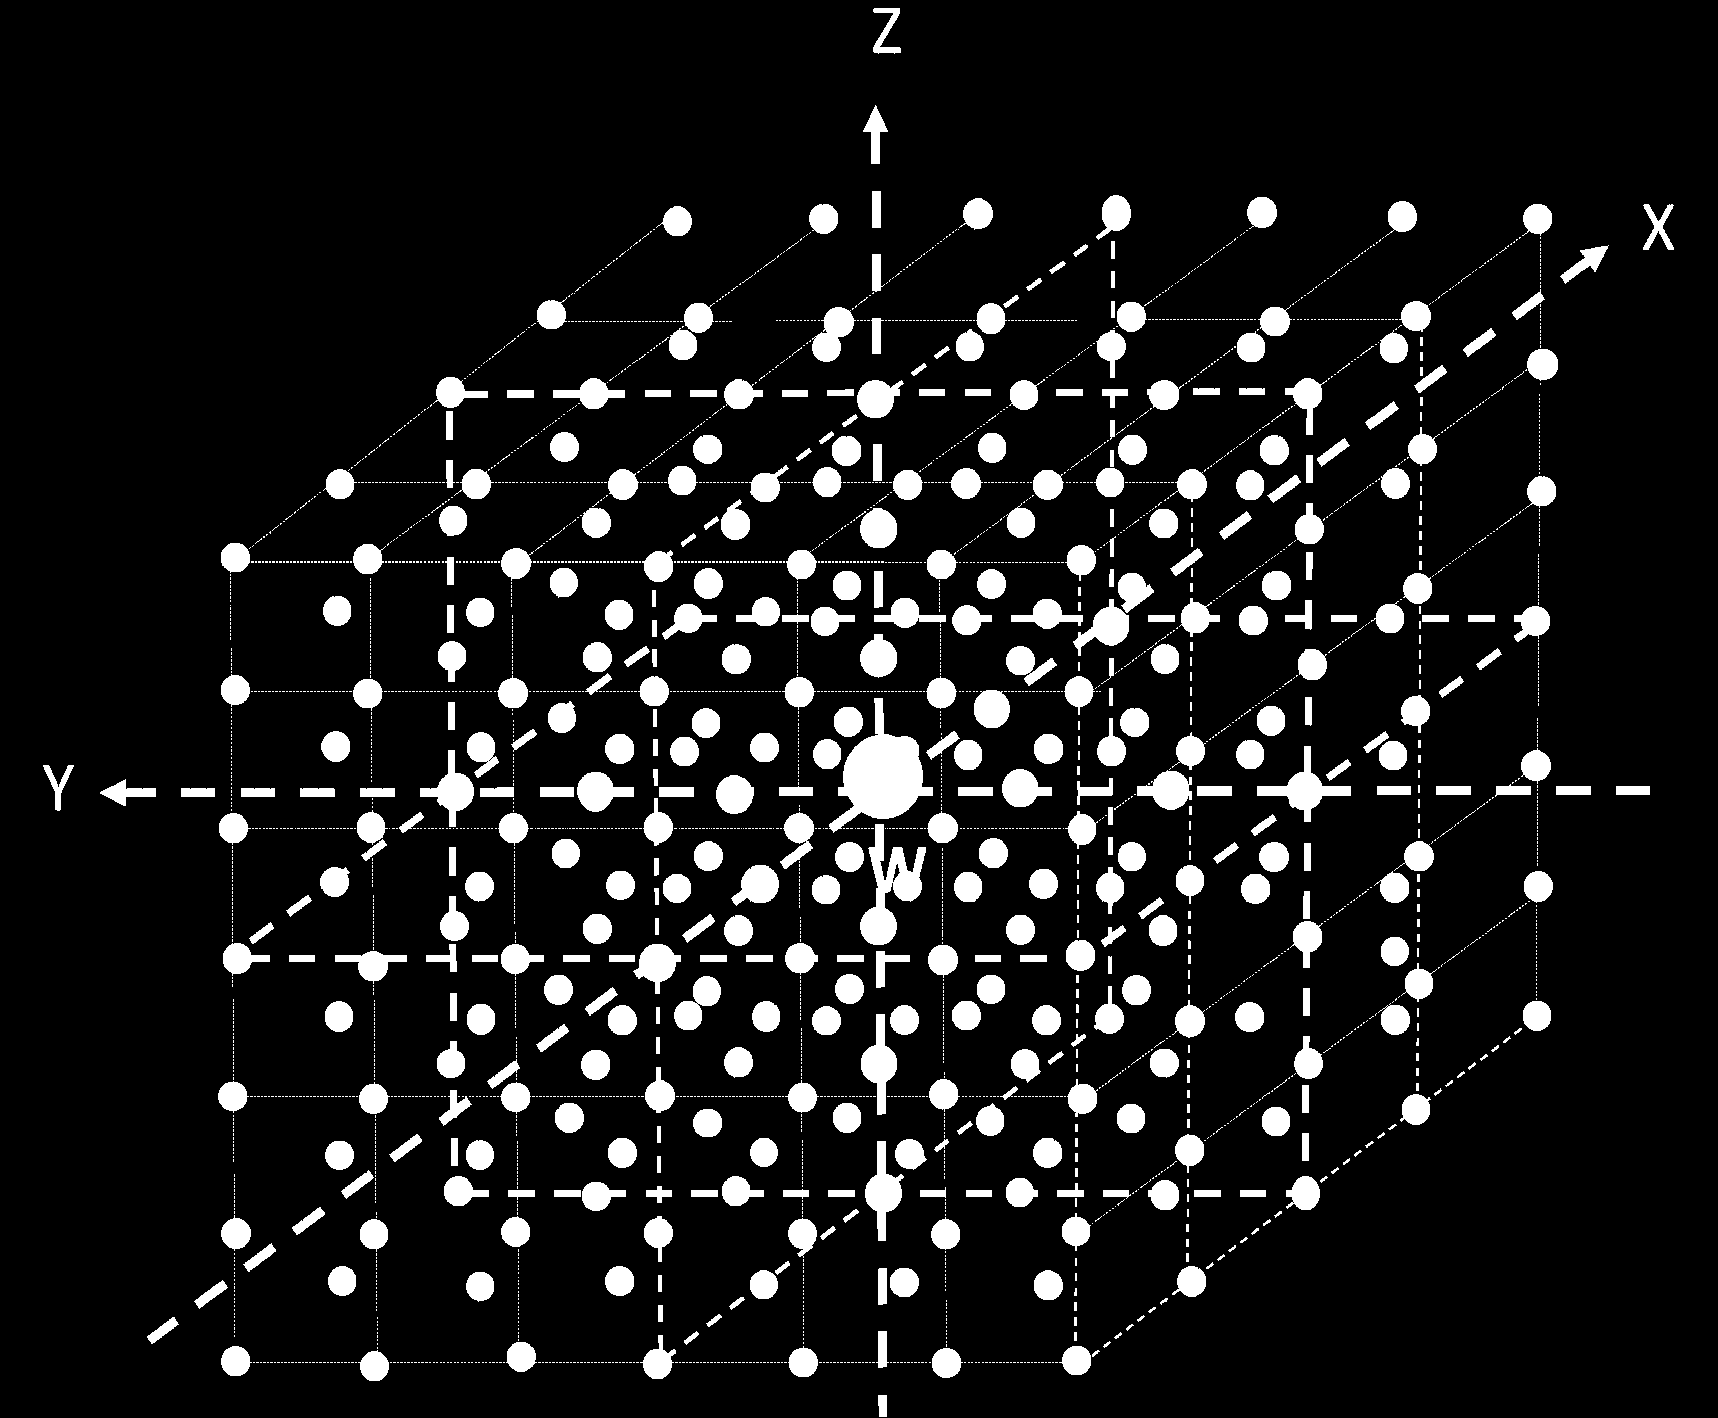 Kuva 1. Todellisen äänilähteen kuvalähteitä avaruudessa. Kuvassa 1 on esitetty osa kuution muotoisen tilan keskipisteessä sijaitsevan to- dellisen äänilähteen (harmaa ympyrä) kuvalähteistä.